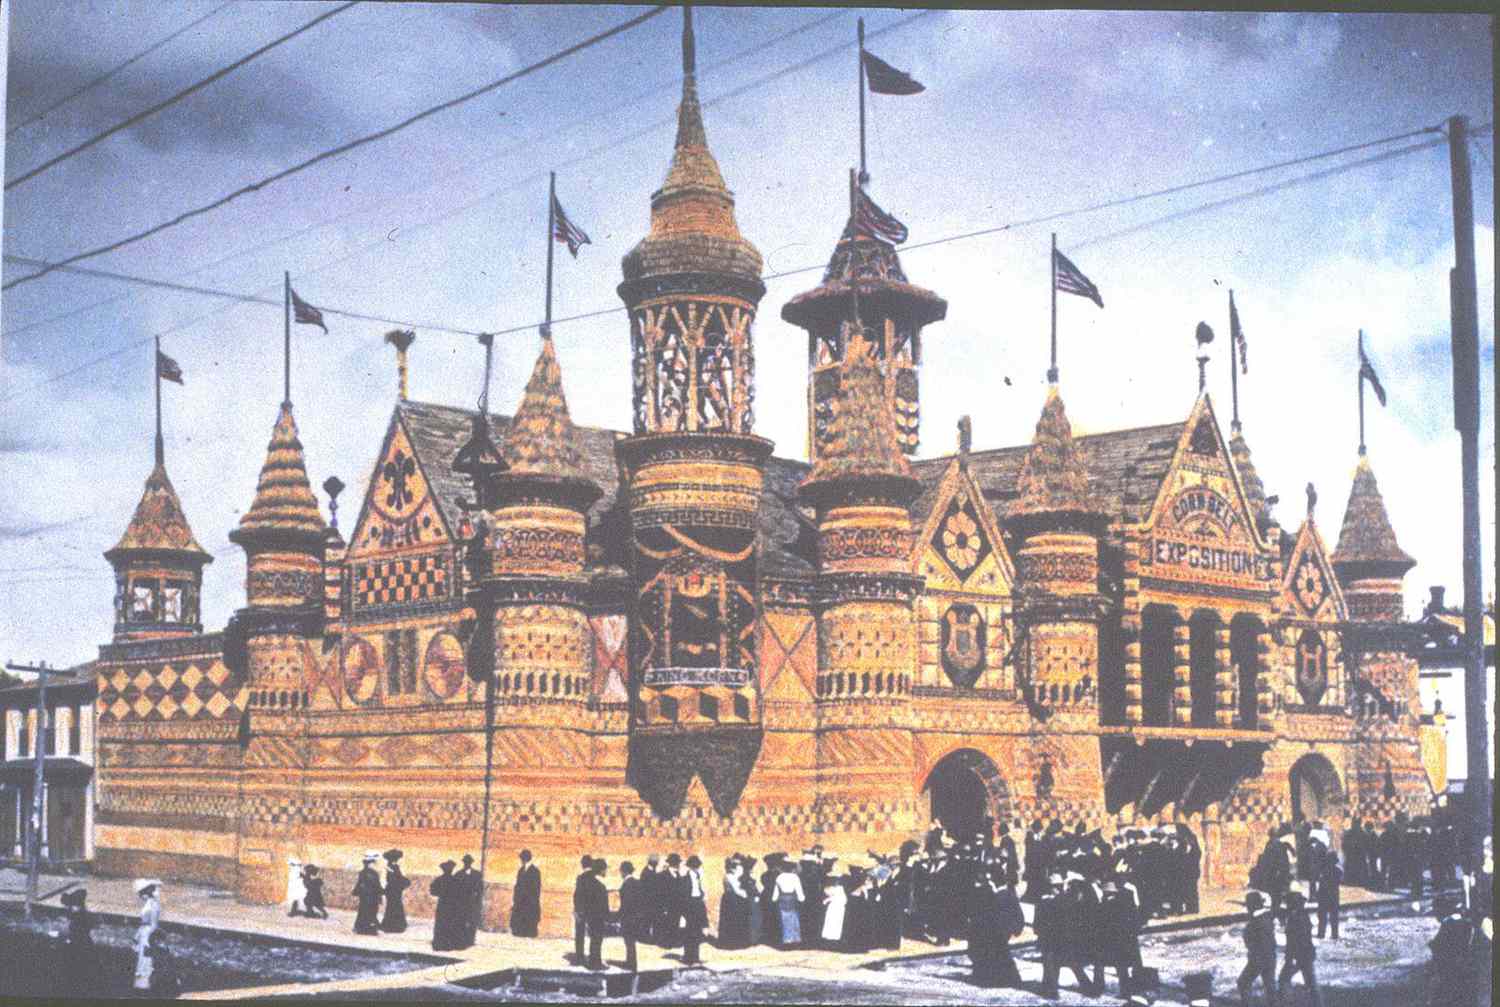 1902 Corn Palace